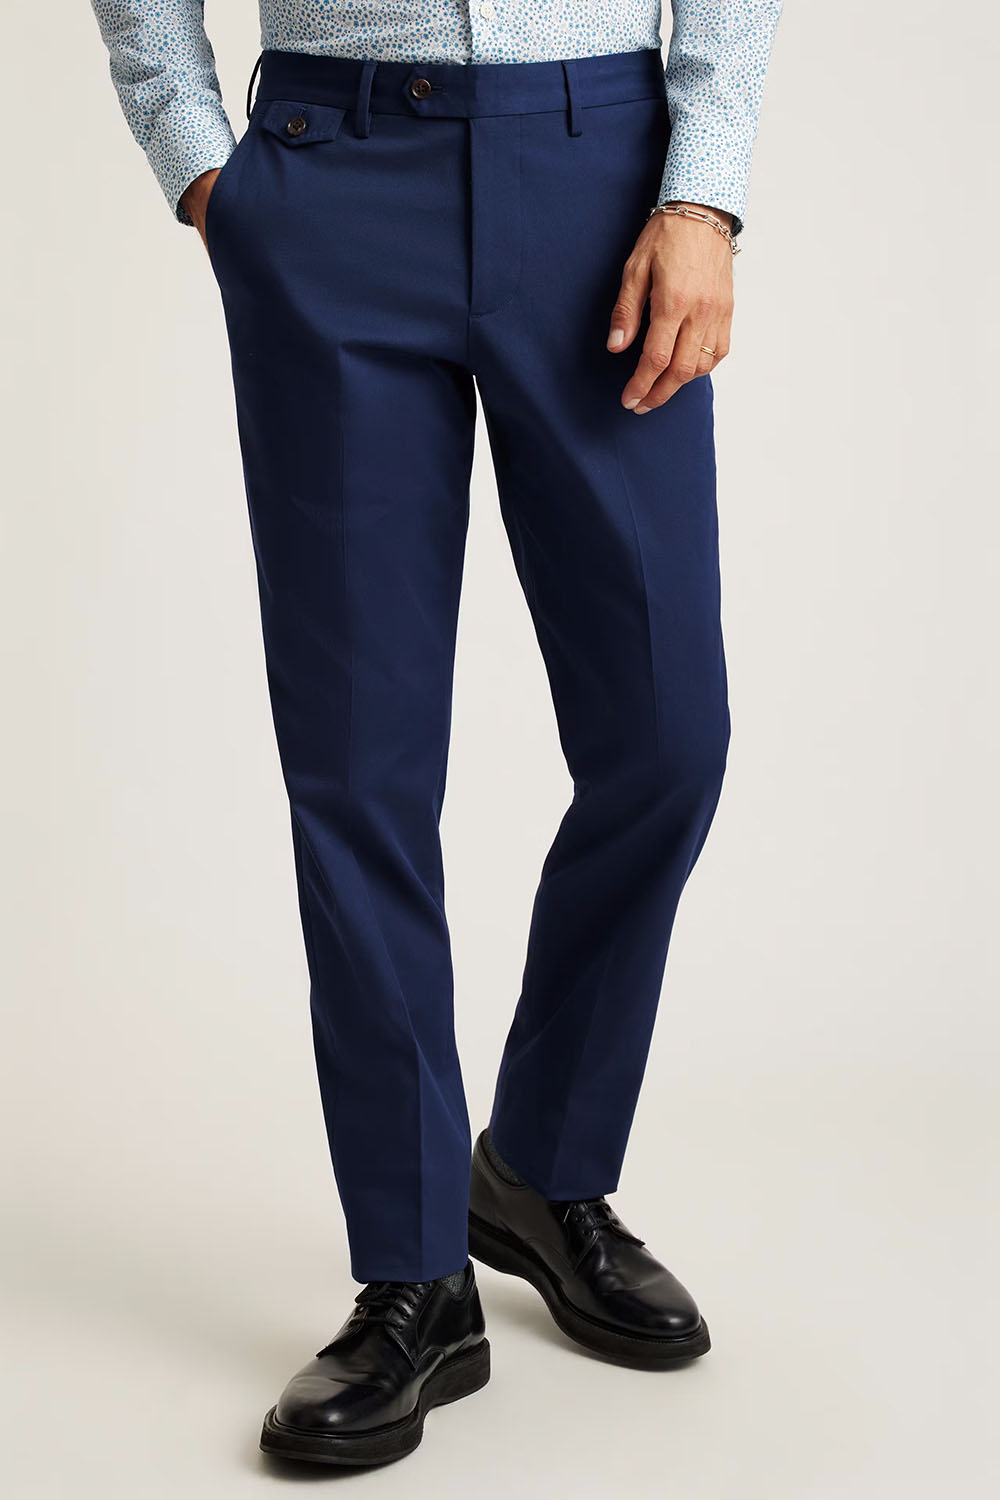 Bonobos - Italian Stretch Cotton Suit Pant - Royal Blue - Front